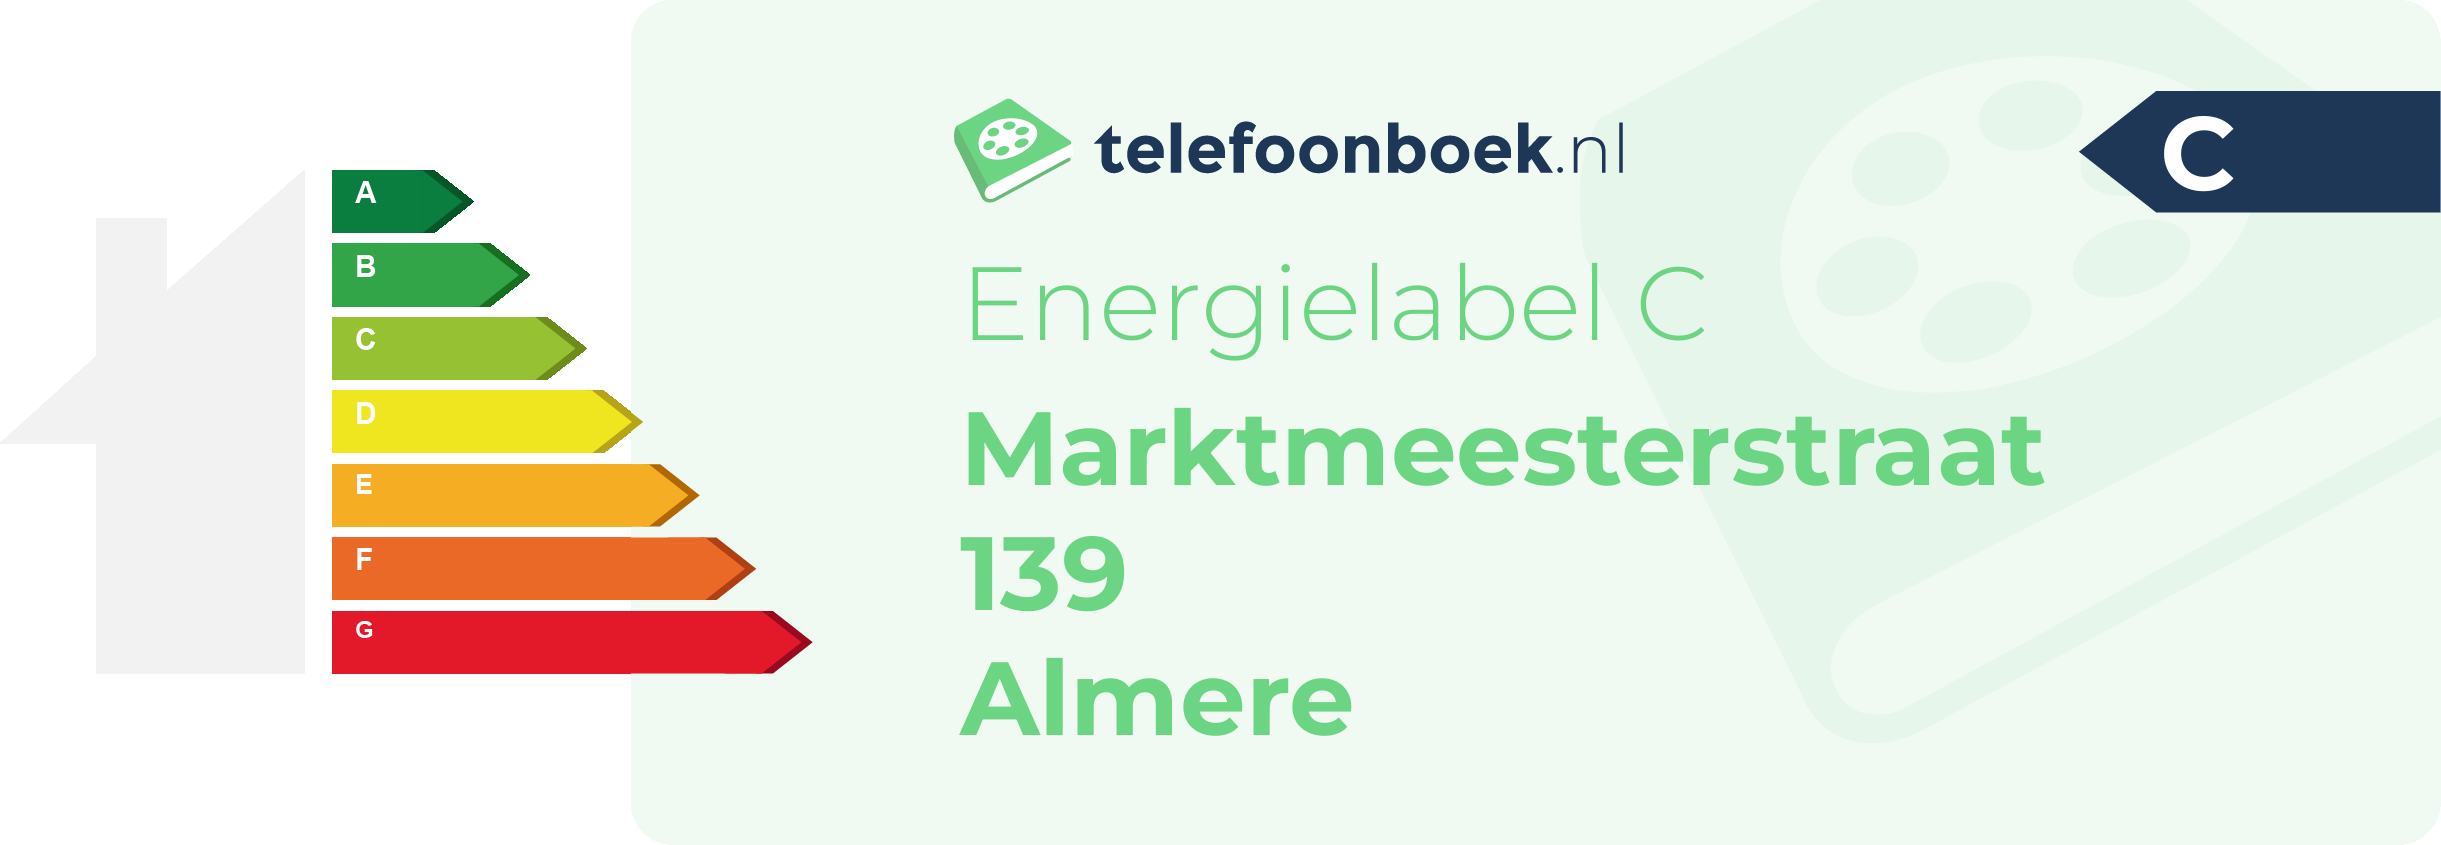 Energielabel Marktmeesterstraat 139 Almere